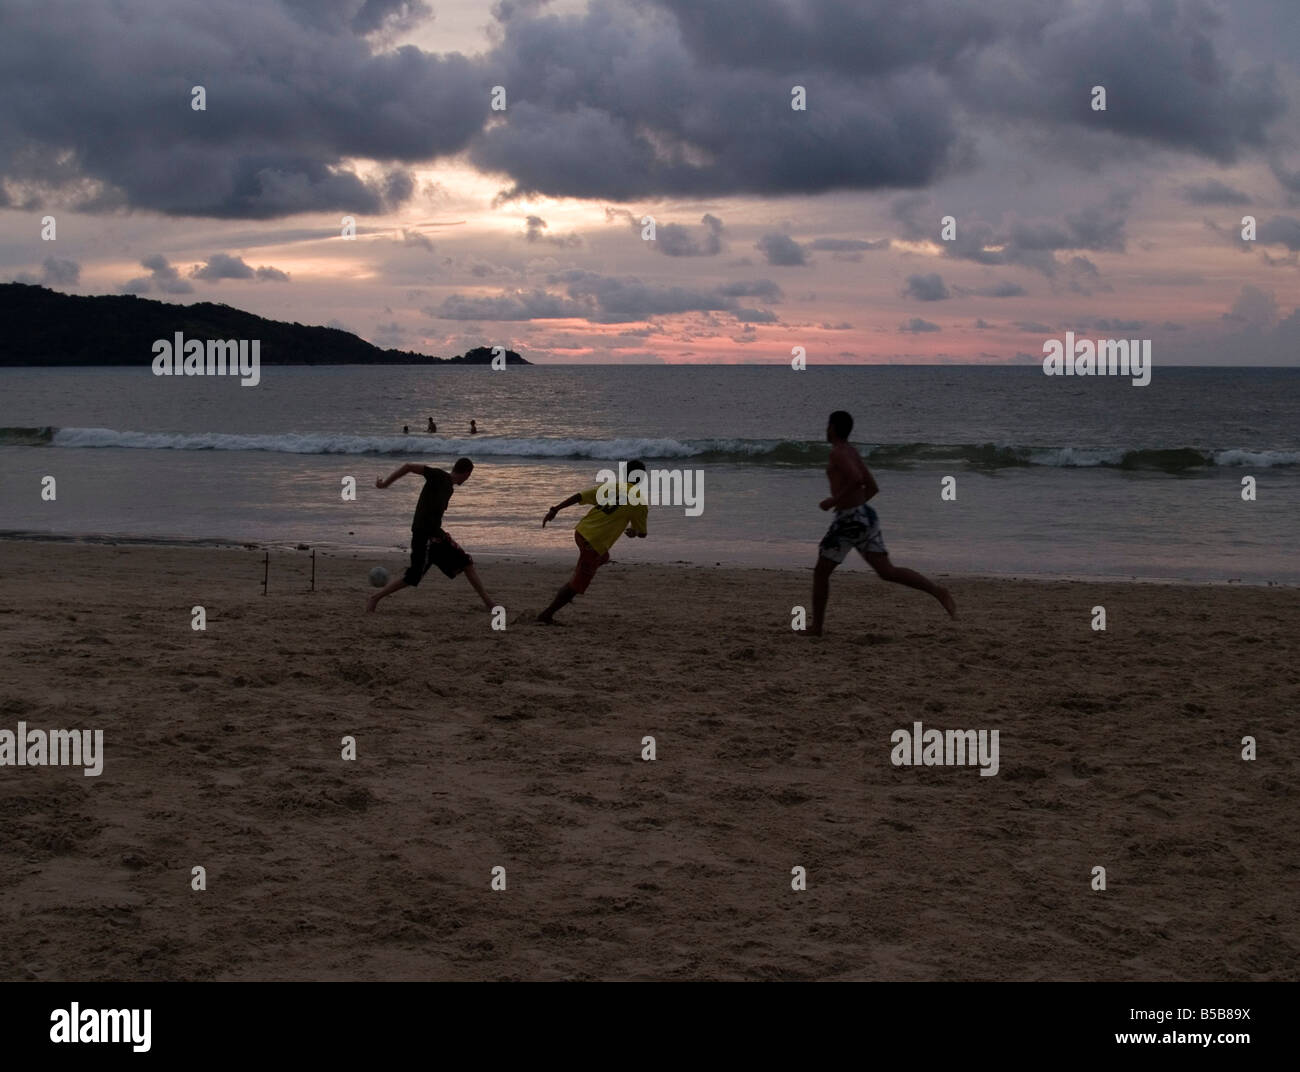 sunset football action on the beach in Phuket Thailand Stock Photo